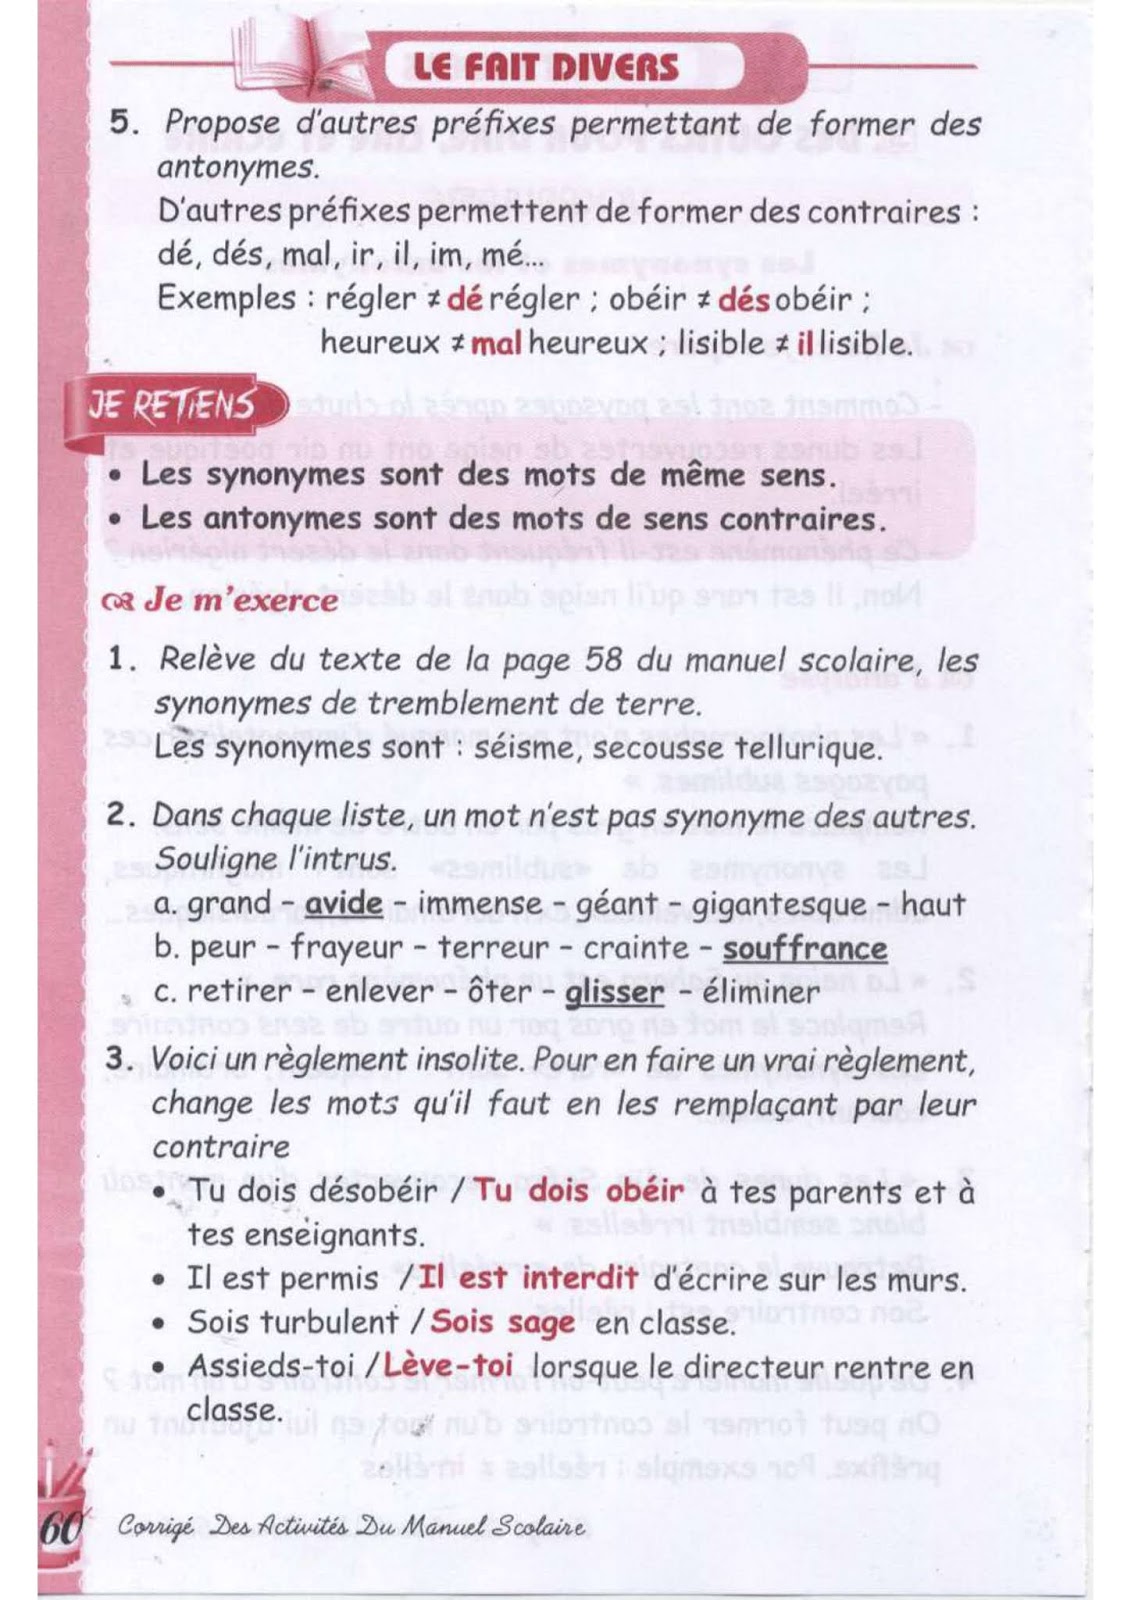 حل تمارين صفحة 57 الفرنسية للسنة الثالثة متوسط - الجيل الثاني